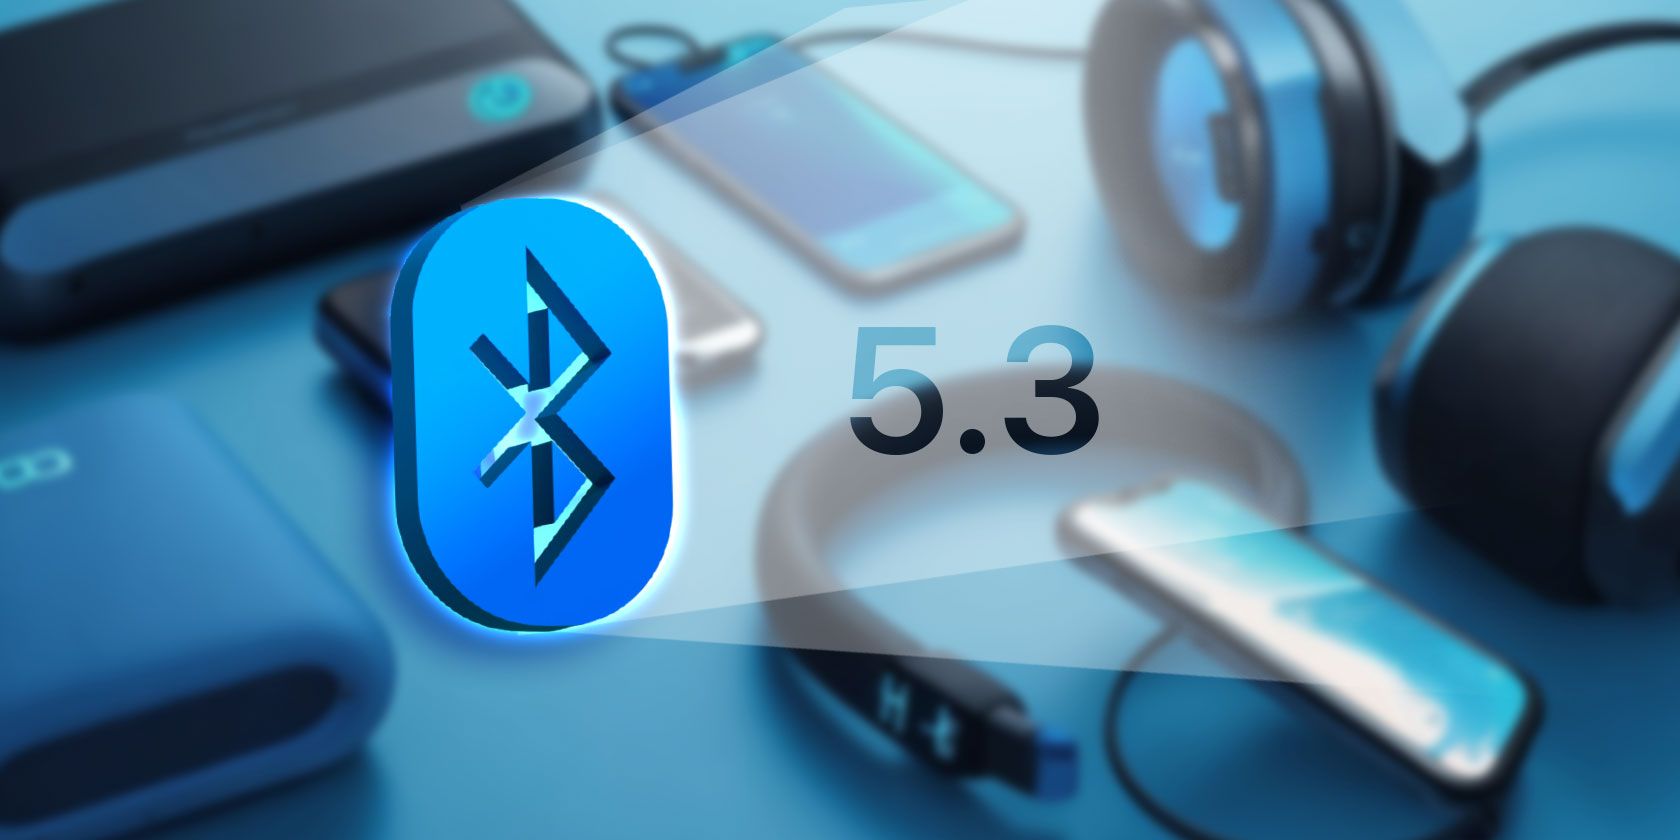 iPhoneIslam.com によると、Bluetooth 5.3 ロゴは、スマートフォン、スマートウォッチ、AirPods などのさまざまなデバイスを背景に目立つように表示されています。